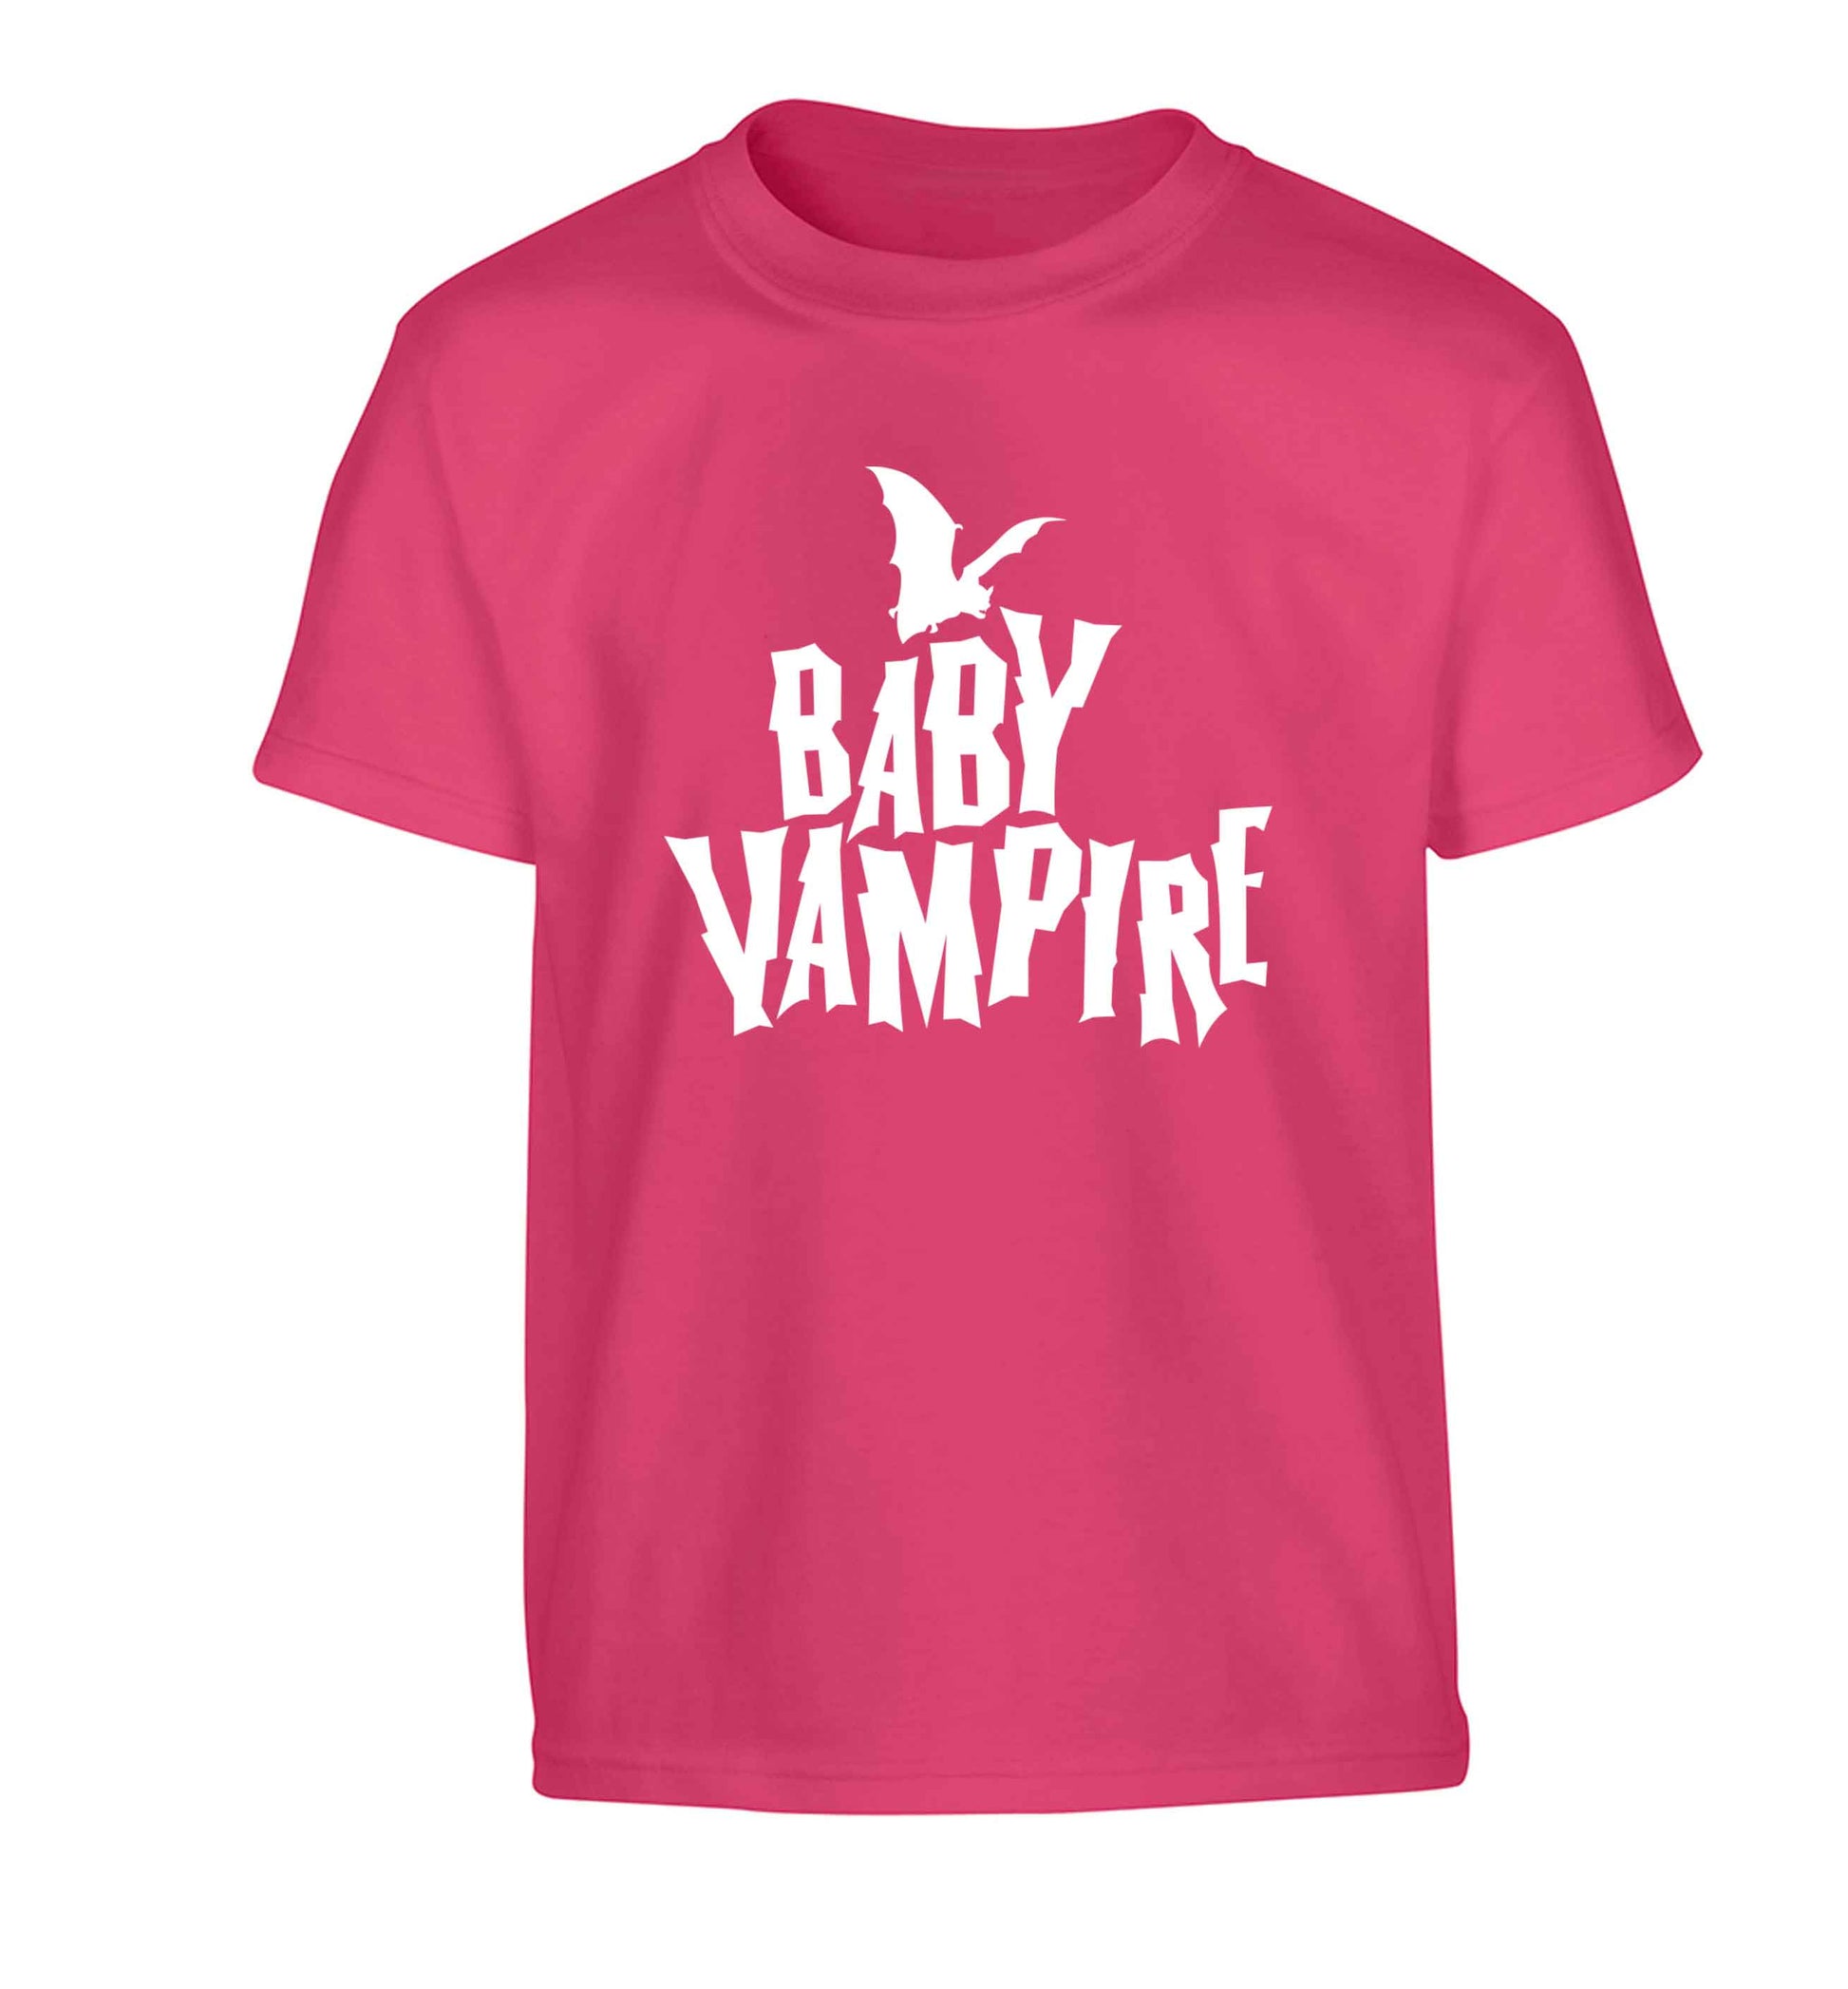 Baby vampire Children's pink Tshirt 12-13 Years